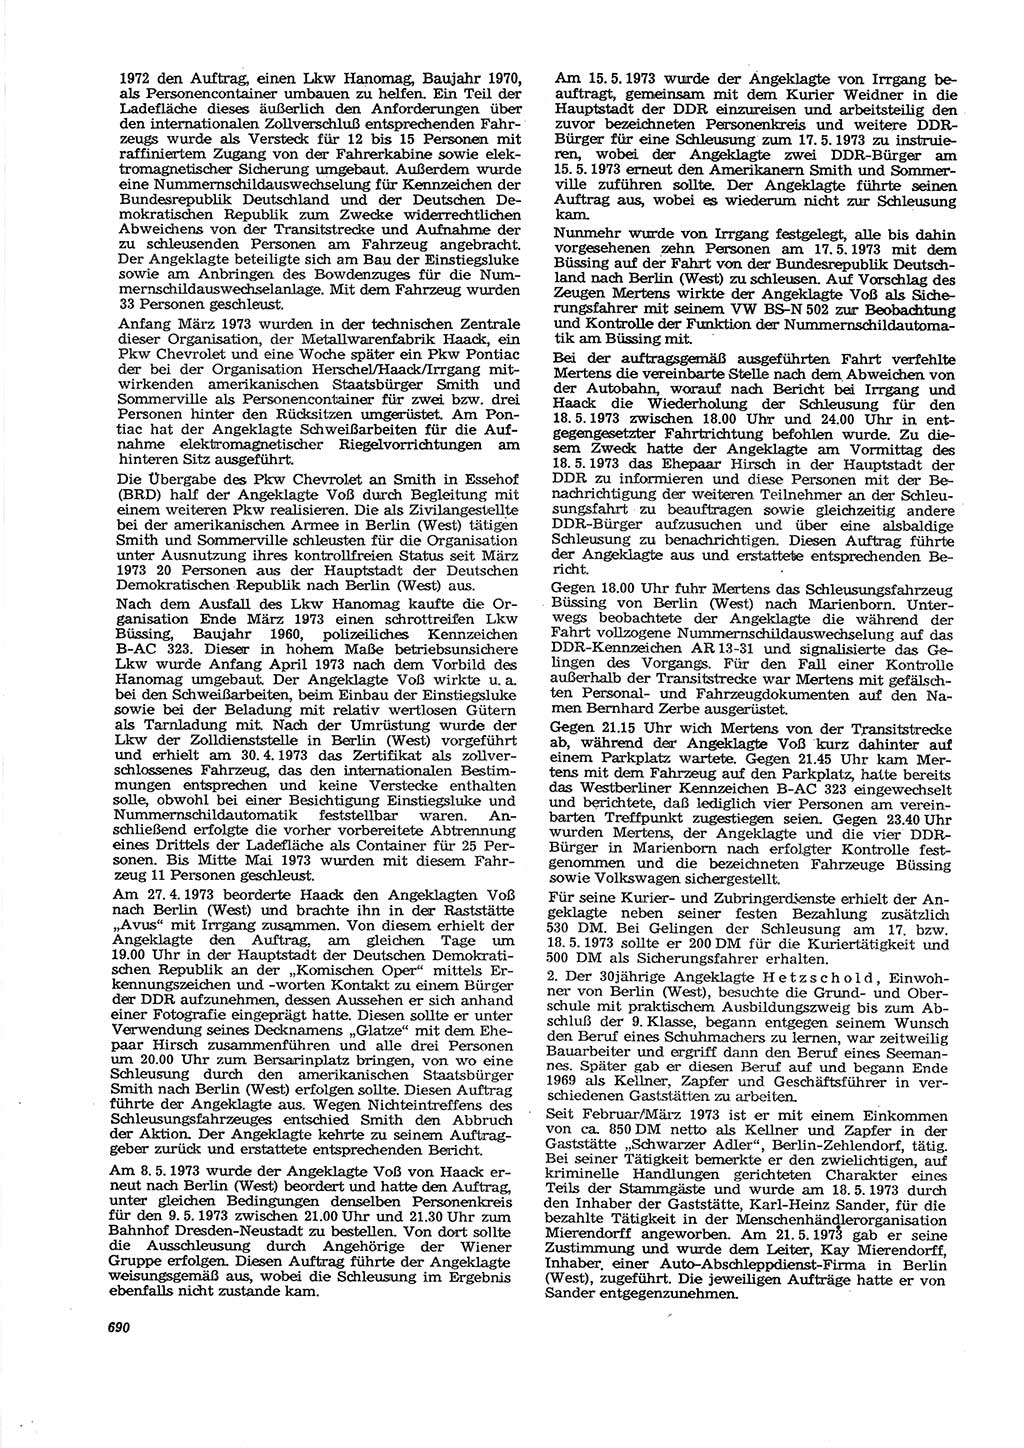 Neue Justiz (NJ), Zeitschrift für Recht und Rechtswissenschaft [Deutsche Demokratische Republik (DDR)], 27. Jahrgang 1973, Seite 690 (NJ DDR 1973, S. 690)